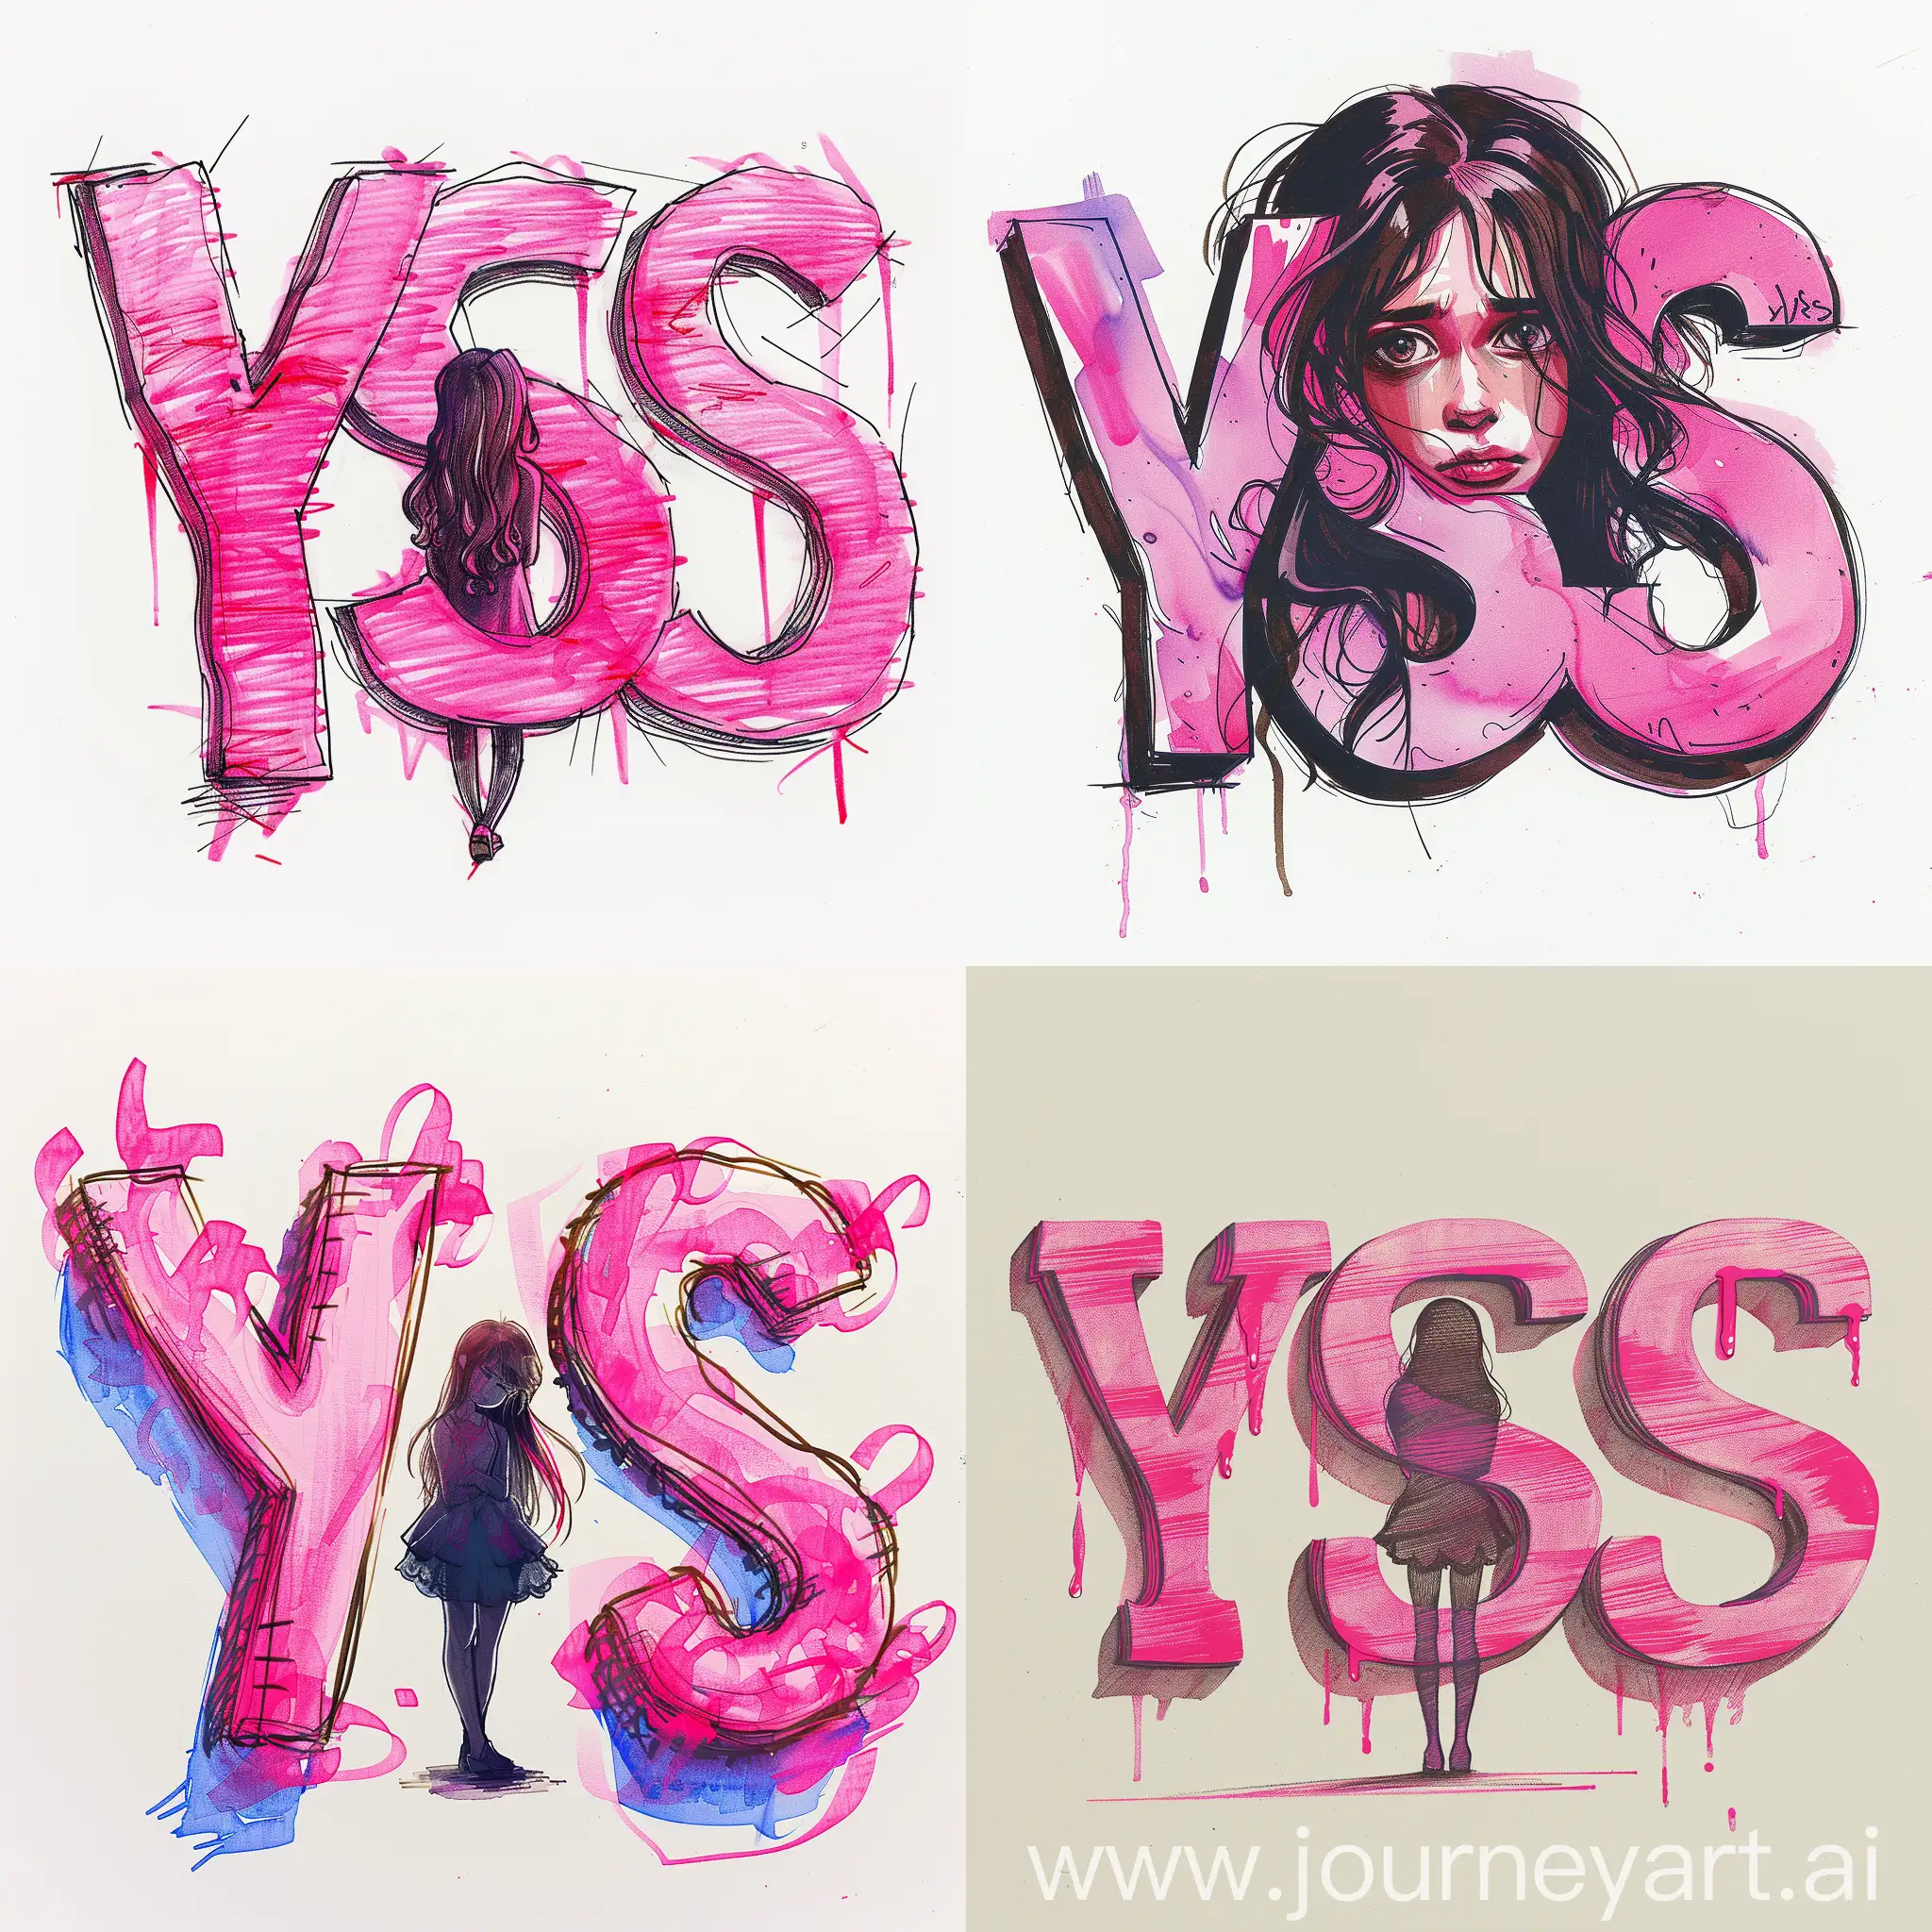 Игровой логотип, color marker drawing, мягкие и изогнутые буквы "YSS" в нежных оттенках розового, силуэт грустной девушки между буквами, --s 300